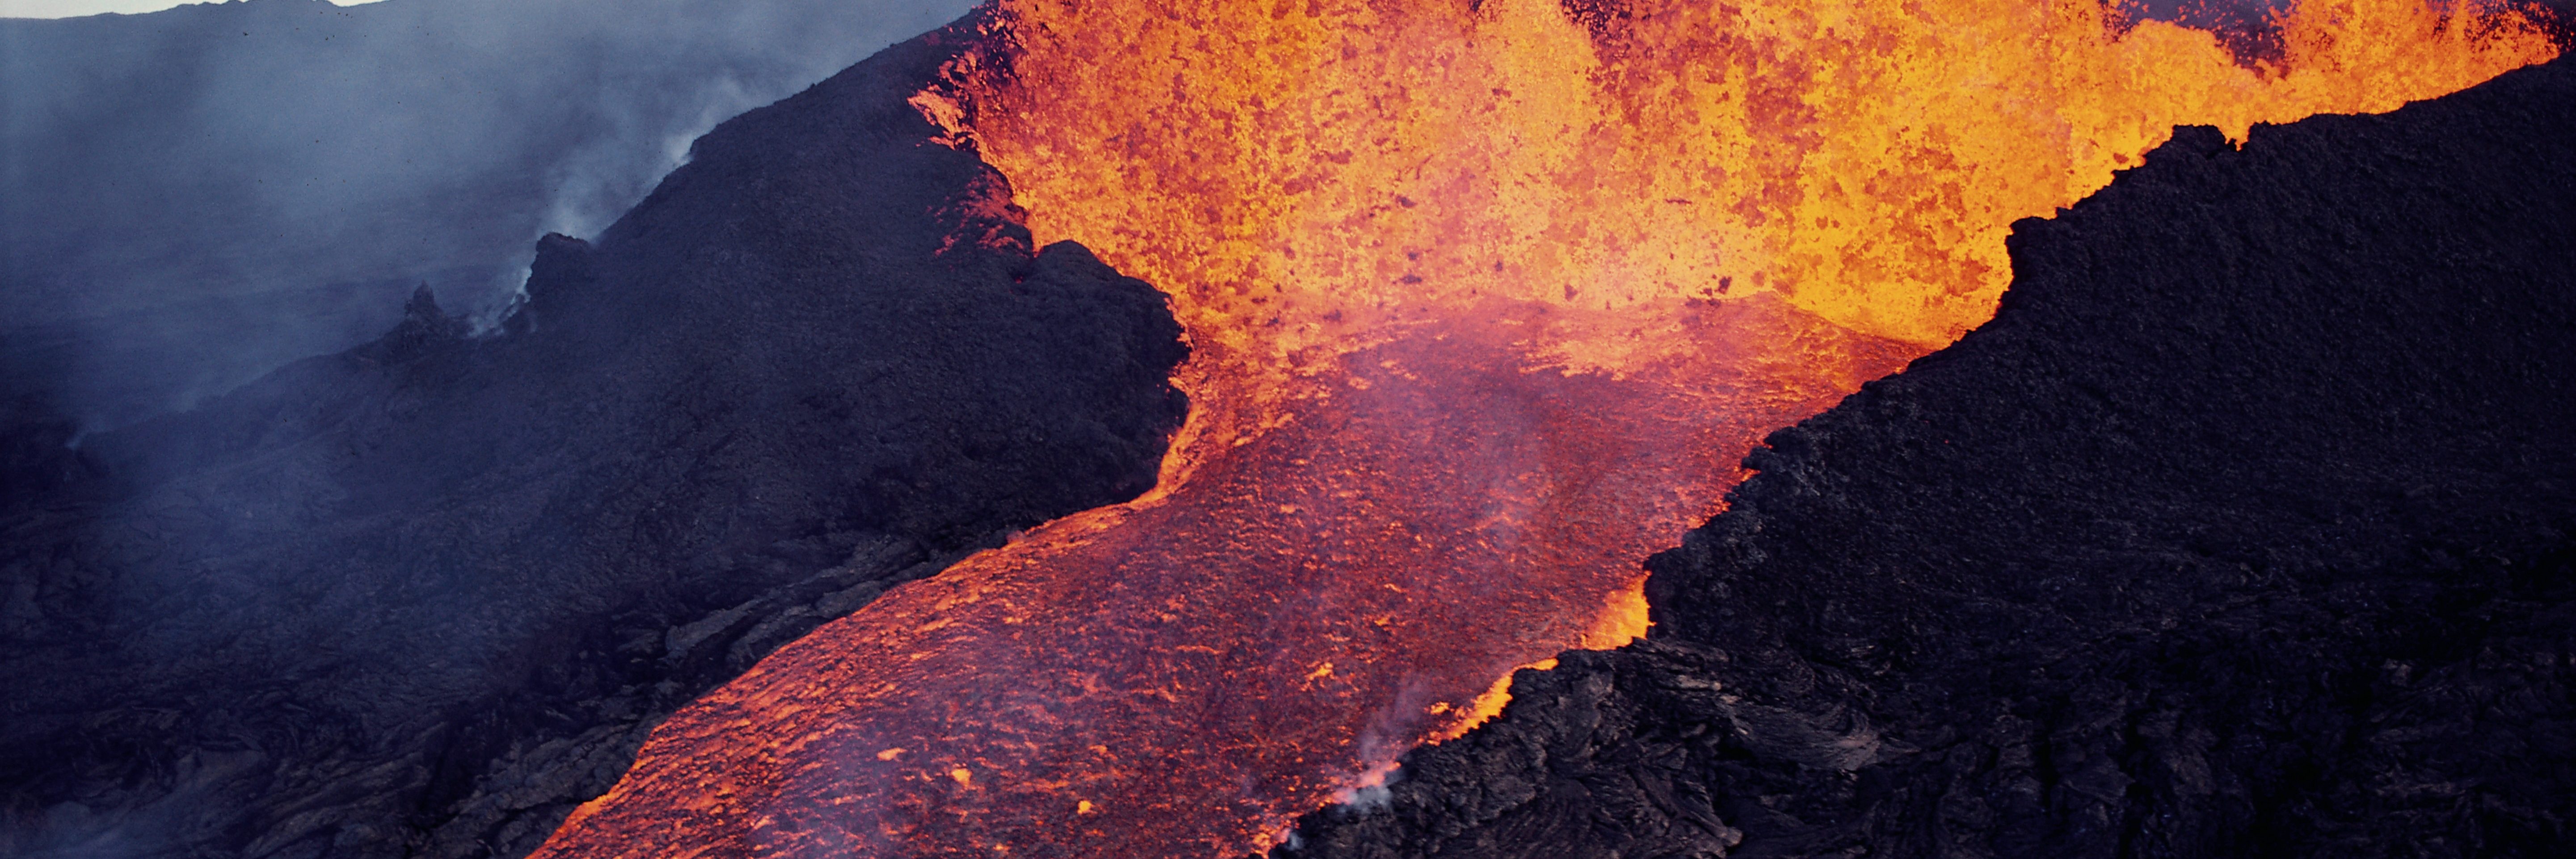 Lethal volcanic eruption